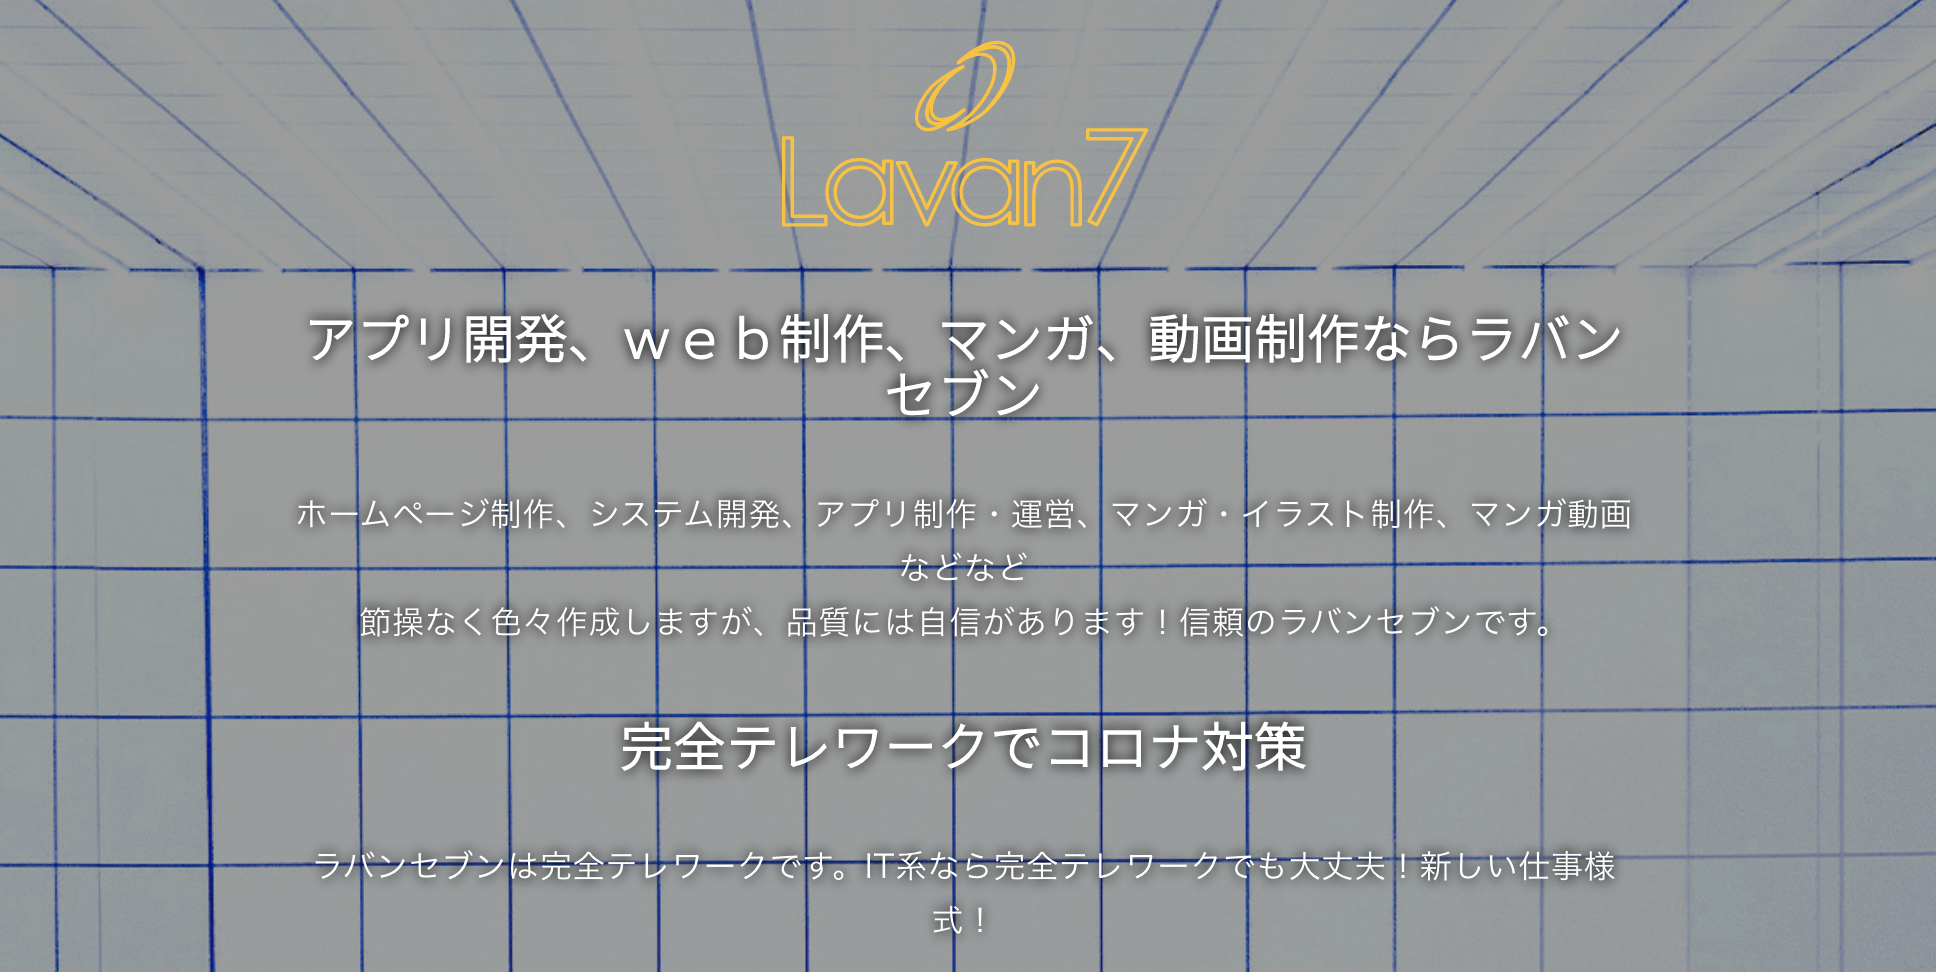 株式会社Lavan7